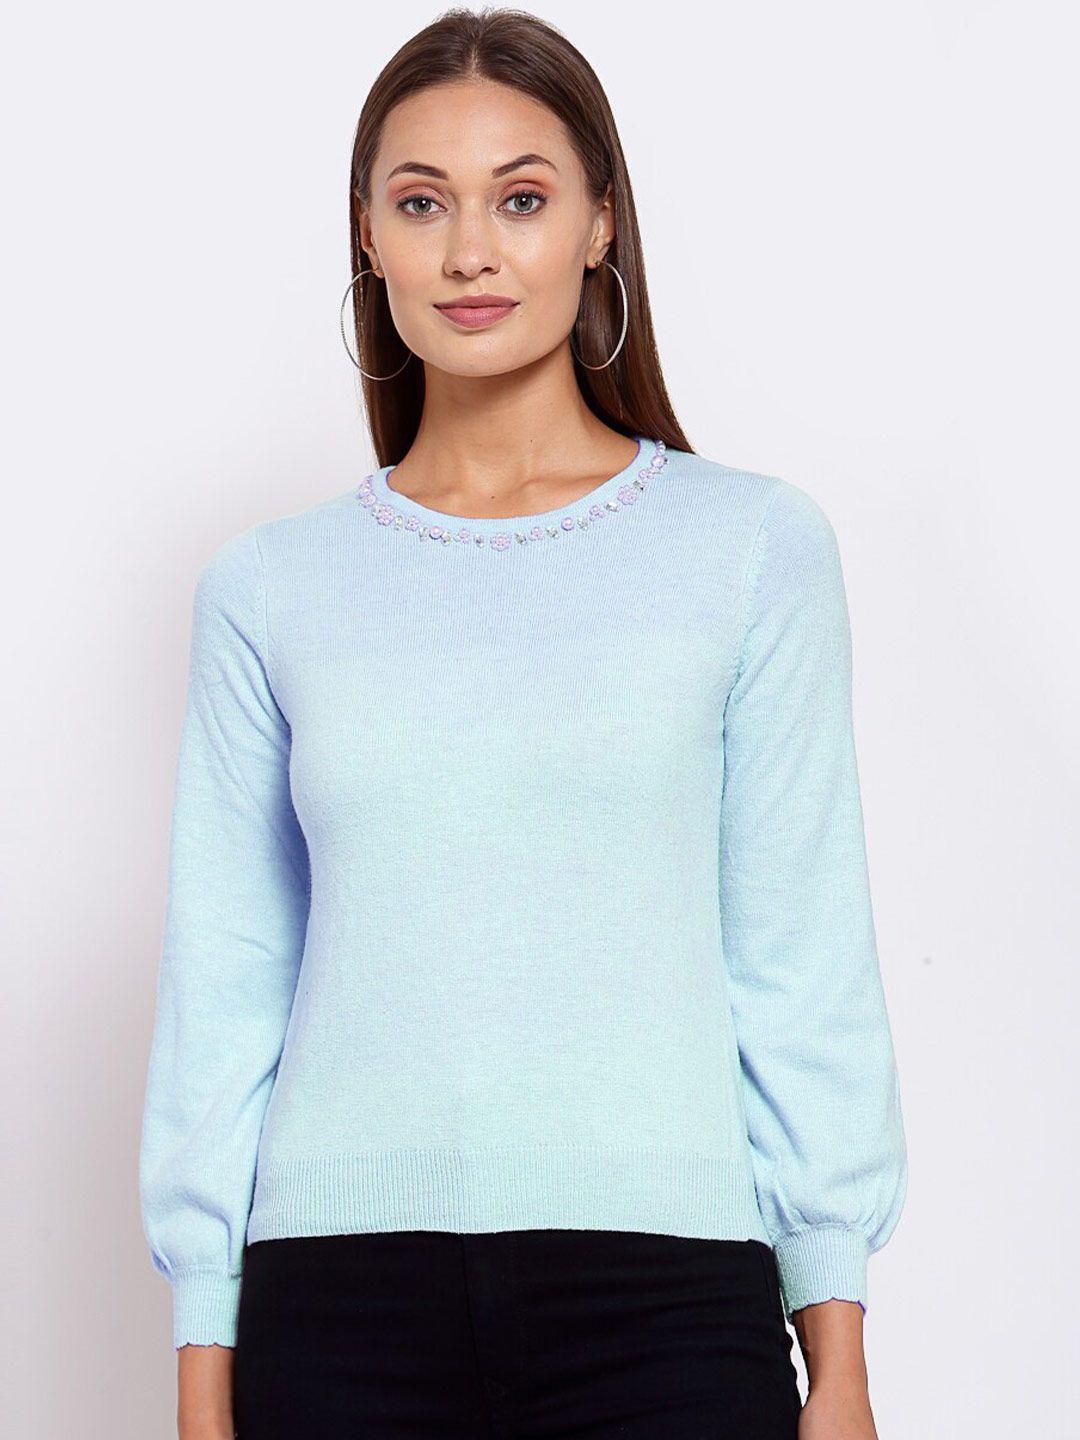 klotthe-women-blue-solid-sweater